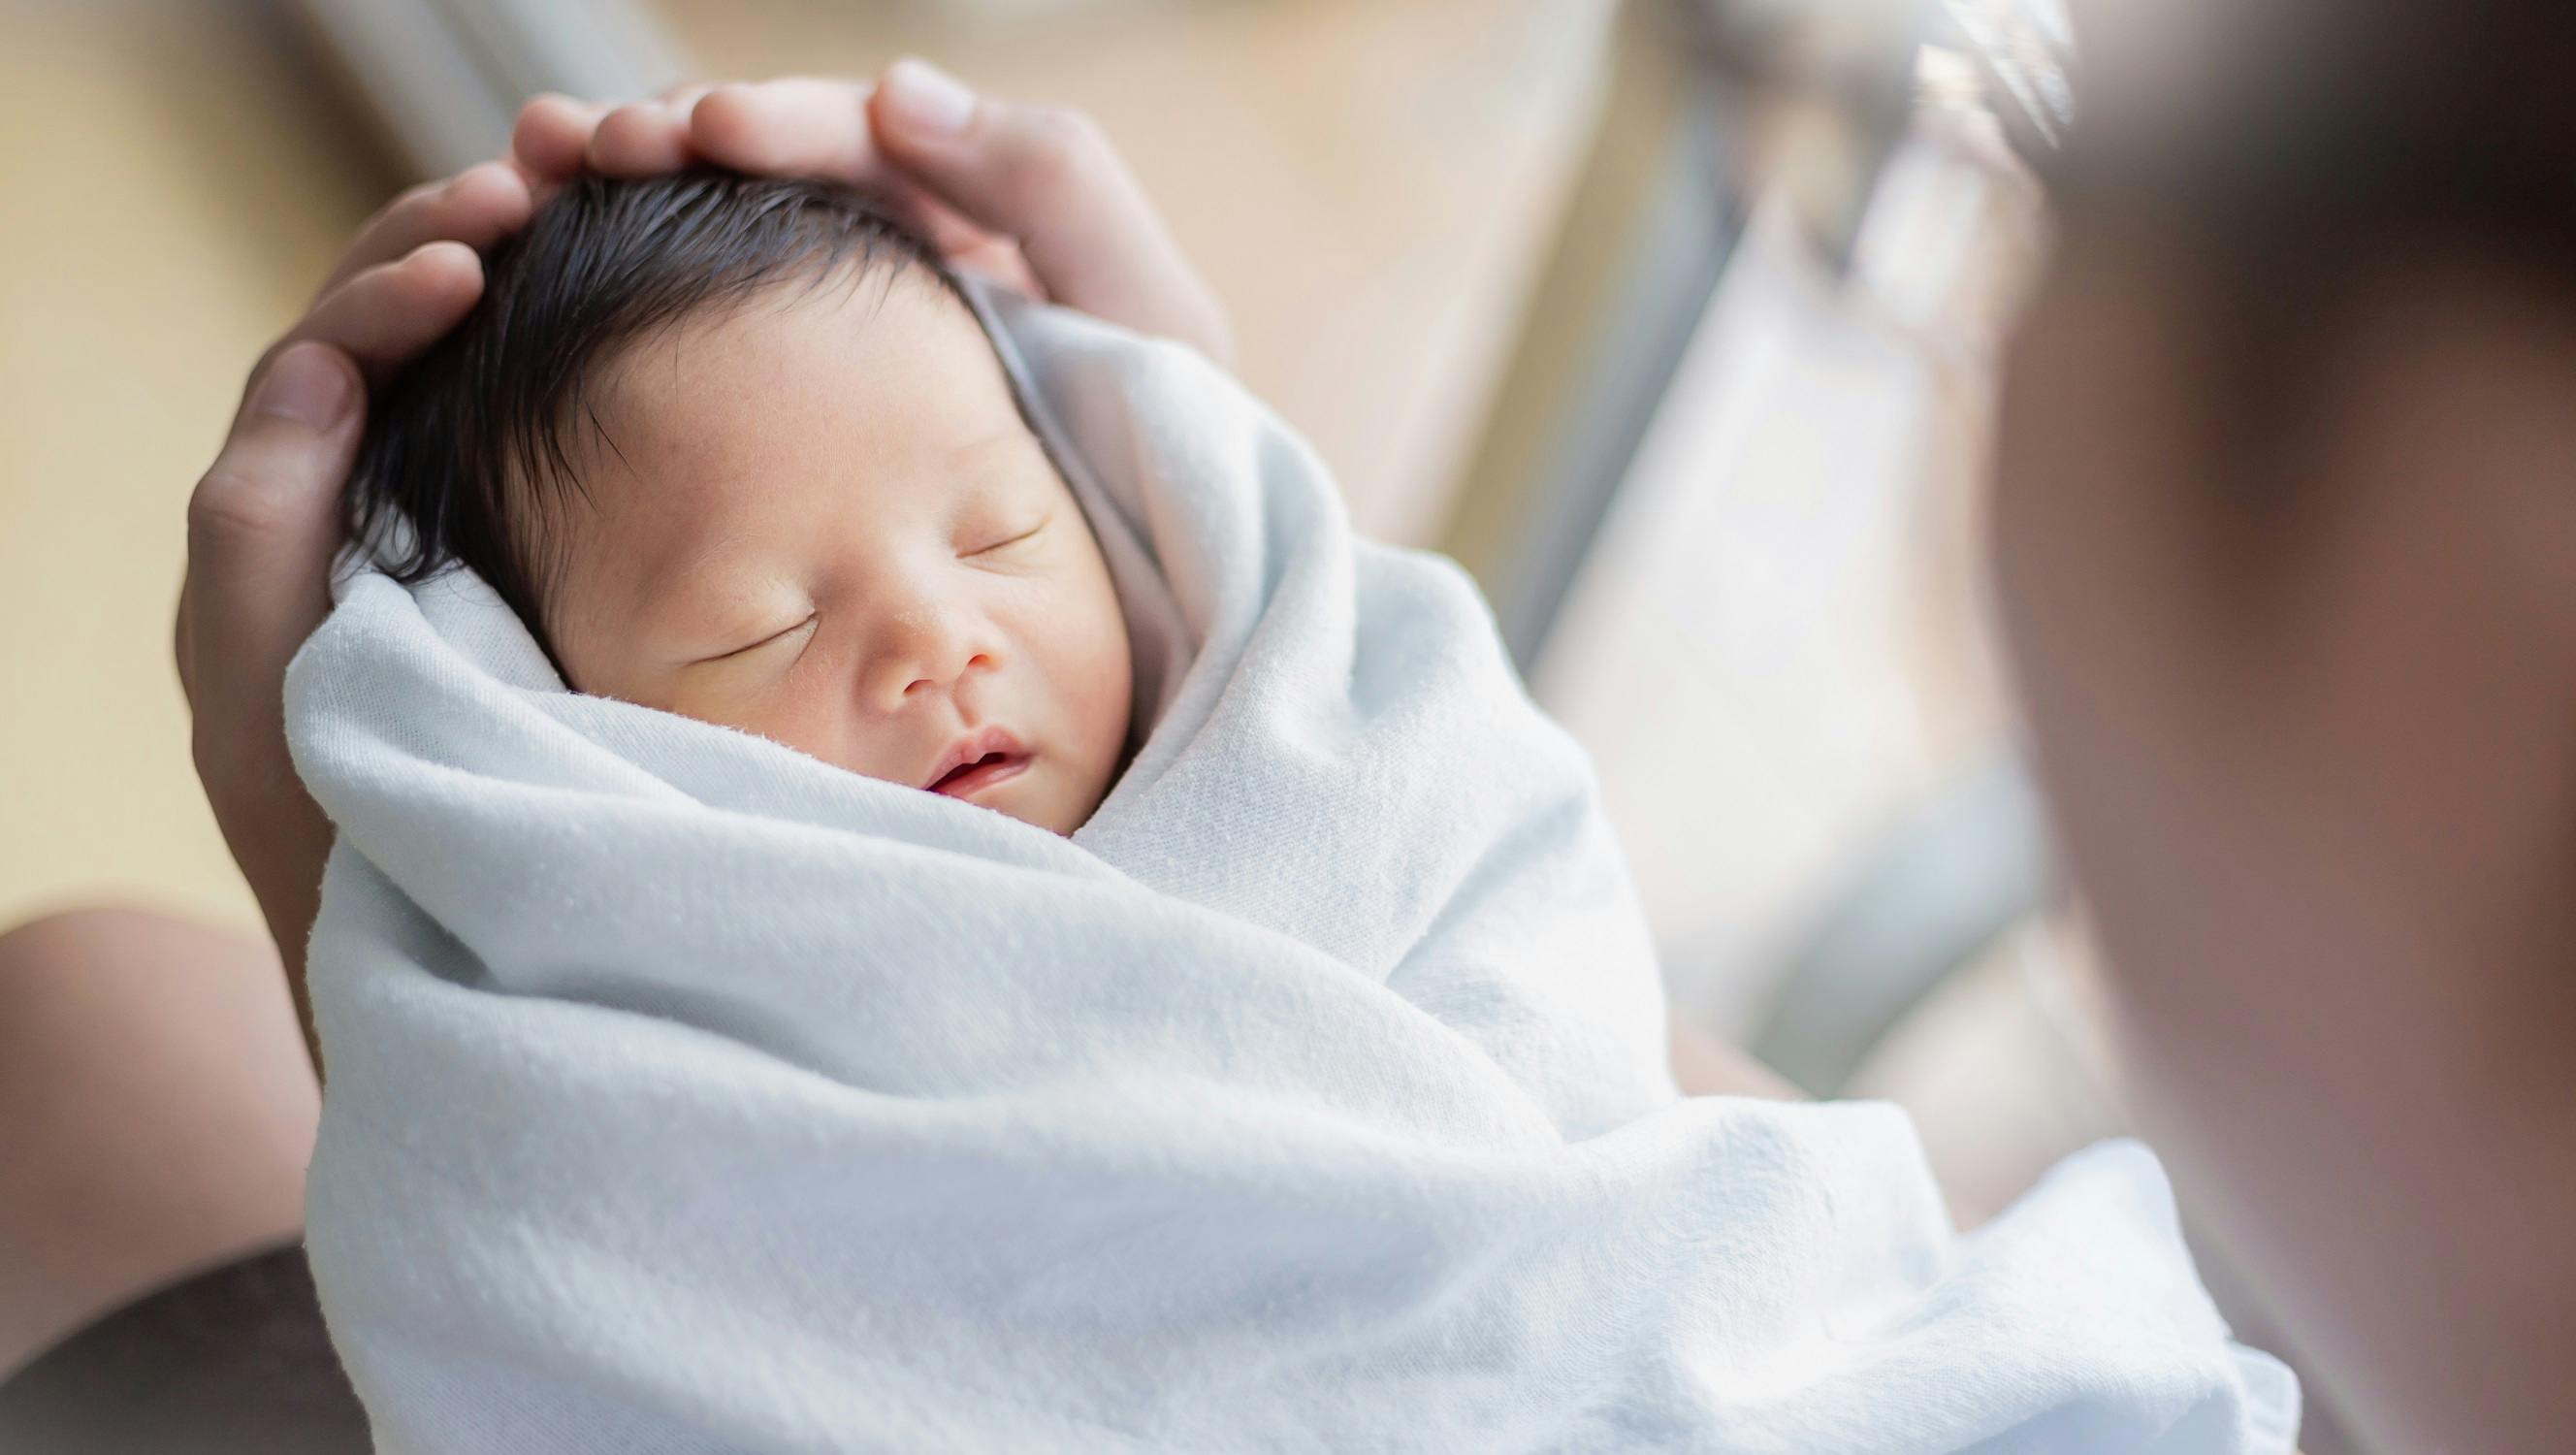 Neugeborenes schläft friedlich eingewickelt in eine weiße Decke.